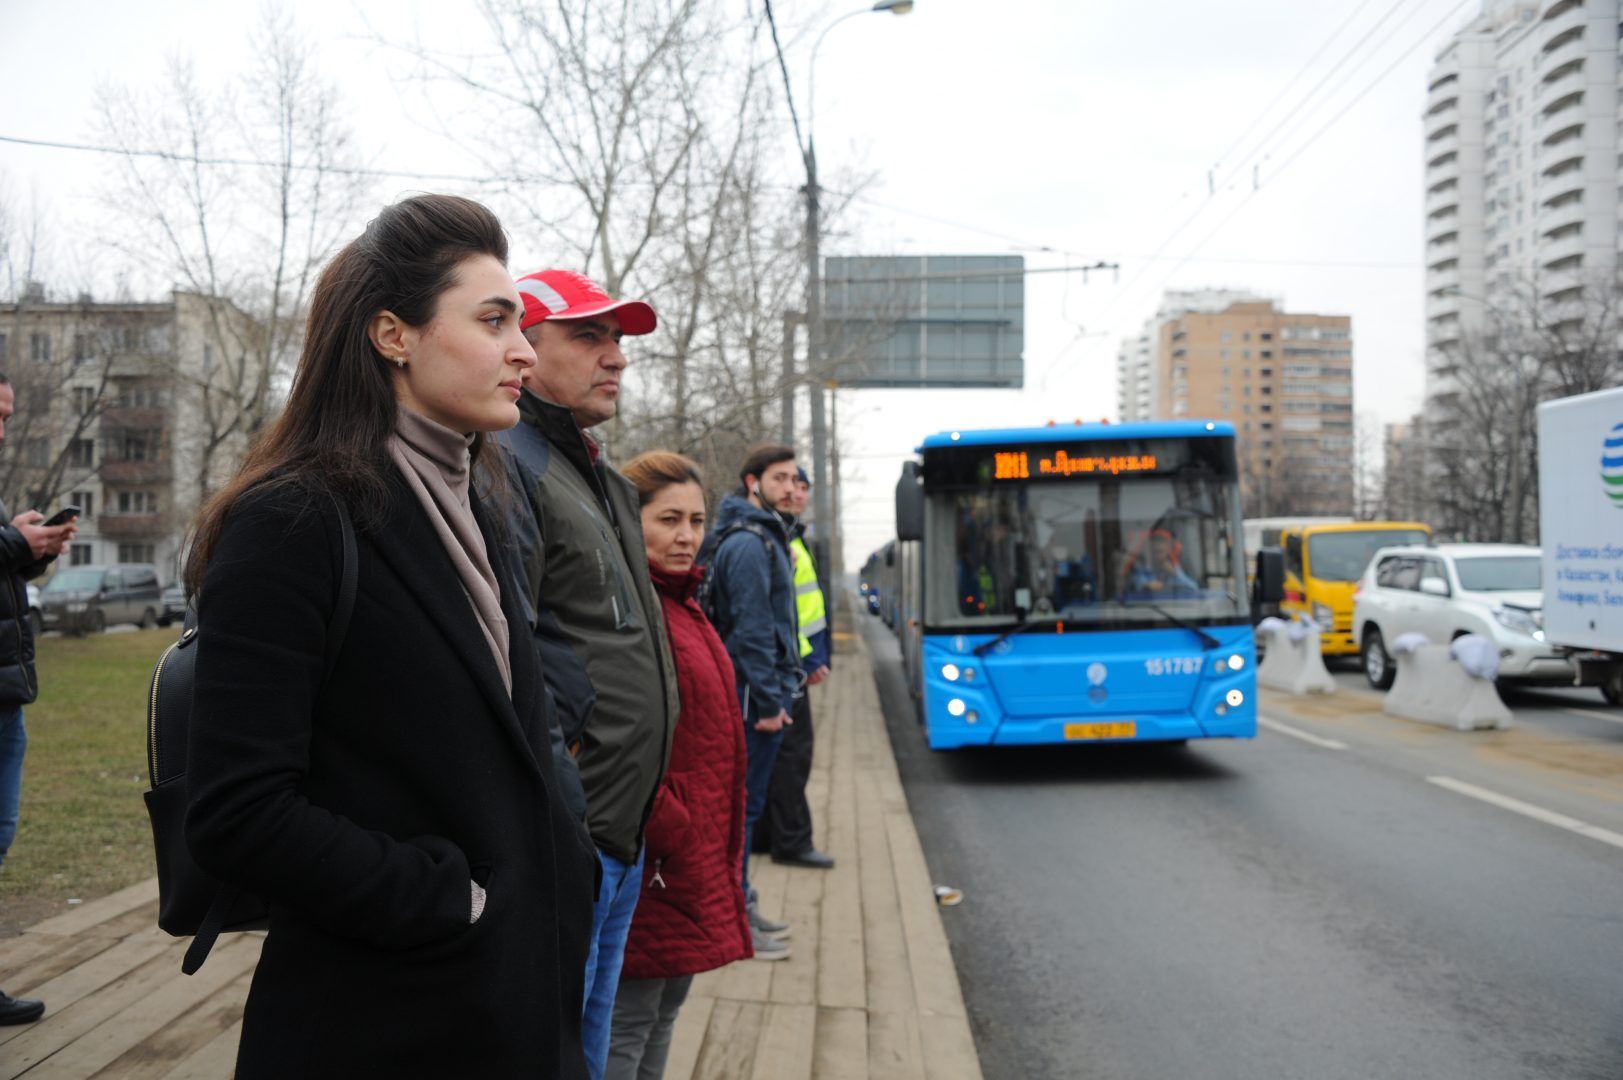 Специалисты организовали дополнительную дезинфекцию салонов автобусов. Фото: архив, «Вечерняя Москва»